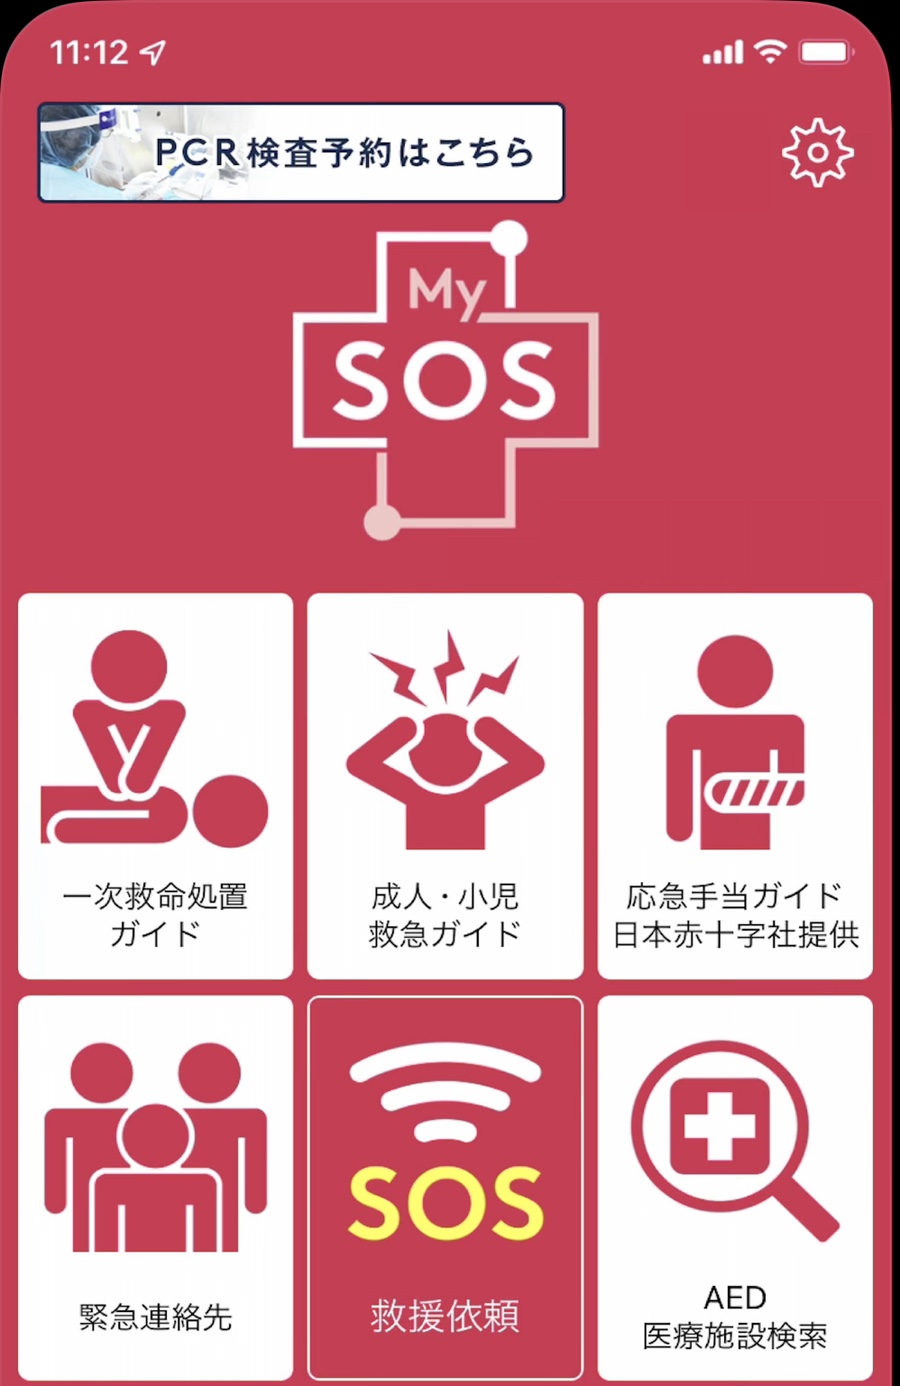 일본 유심 할인구입, 일본 무비자 입국 MY SOS 등록방법